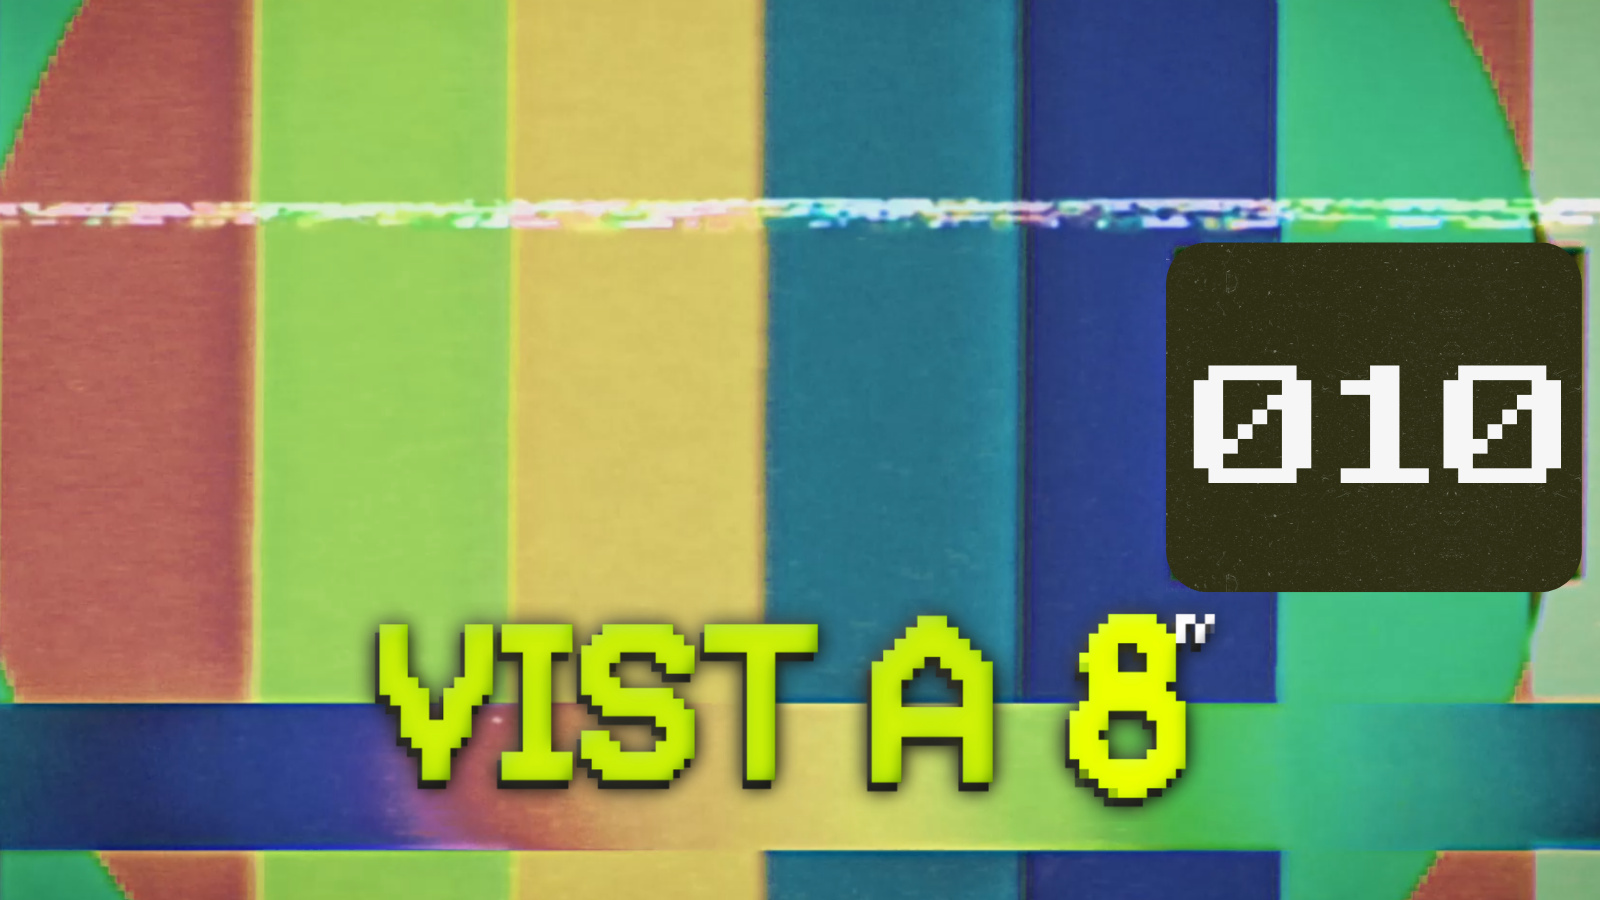 VIST A 8TV - EPISODI 10